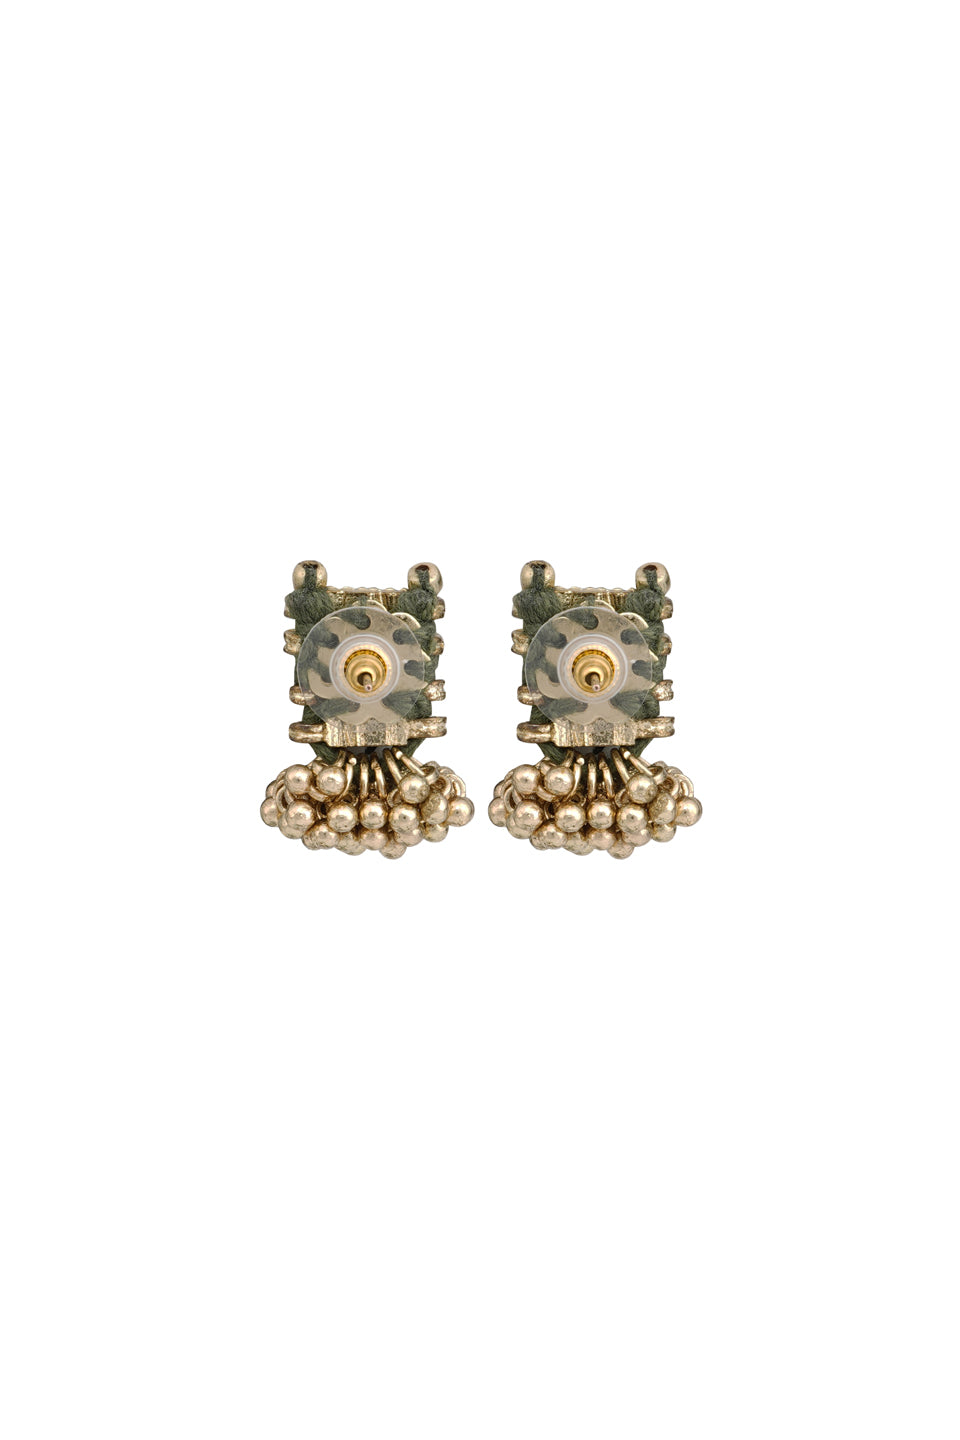 Olive Four Stone Enamel Earrings